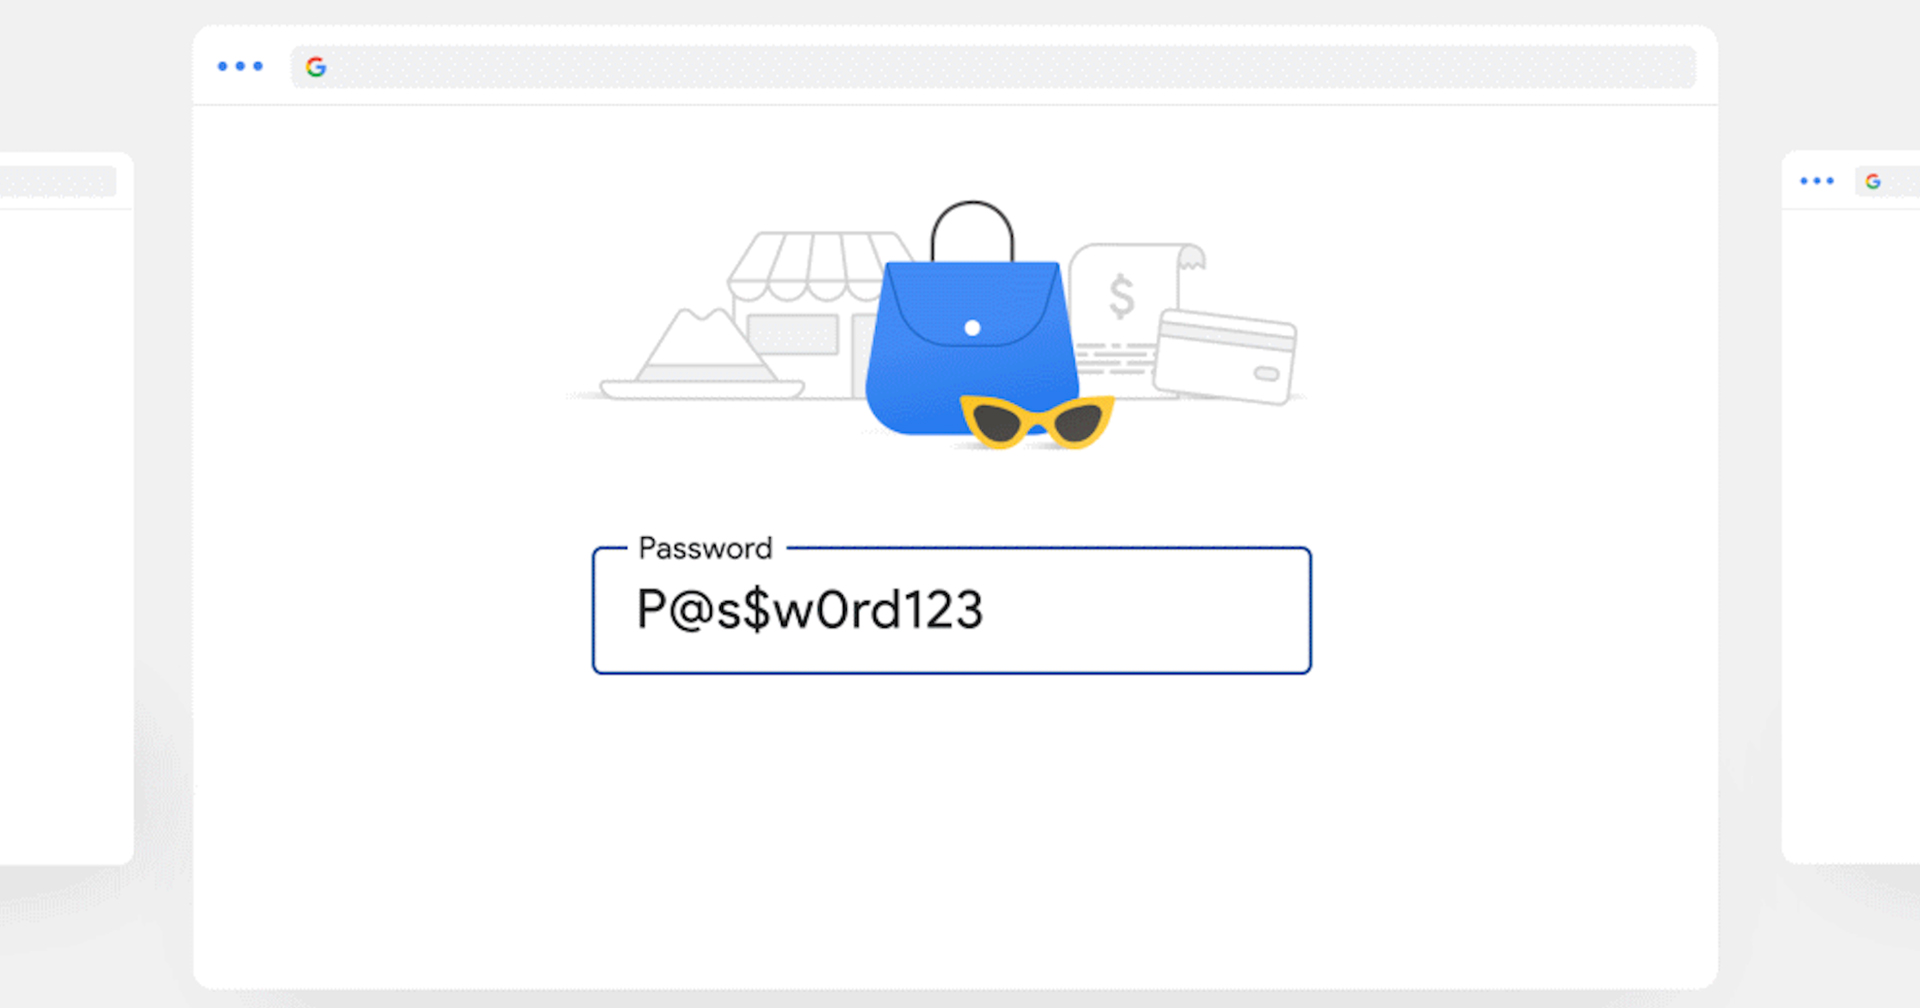 เตือนภัย!! อย่าให้ใครรู้รหัสผ่าน iCloud, Gmail เด็ดขาด อาจจะโดนเรียกค่าไถ่ได้…